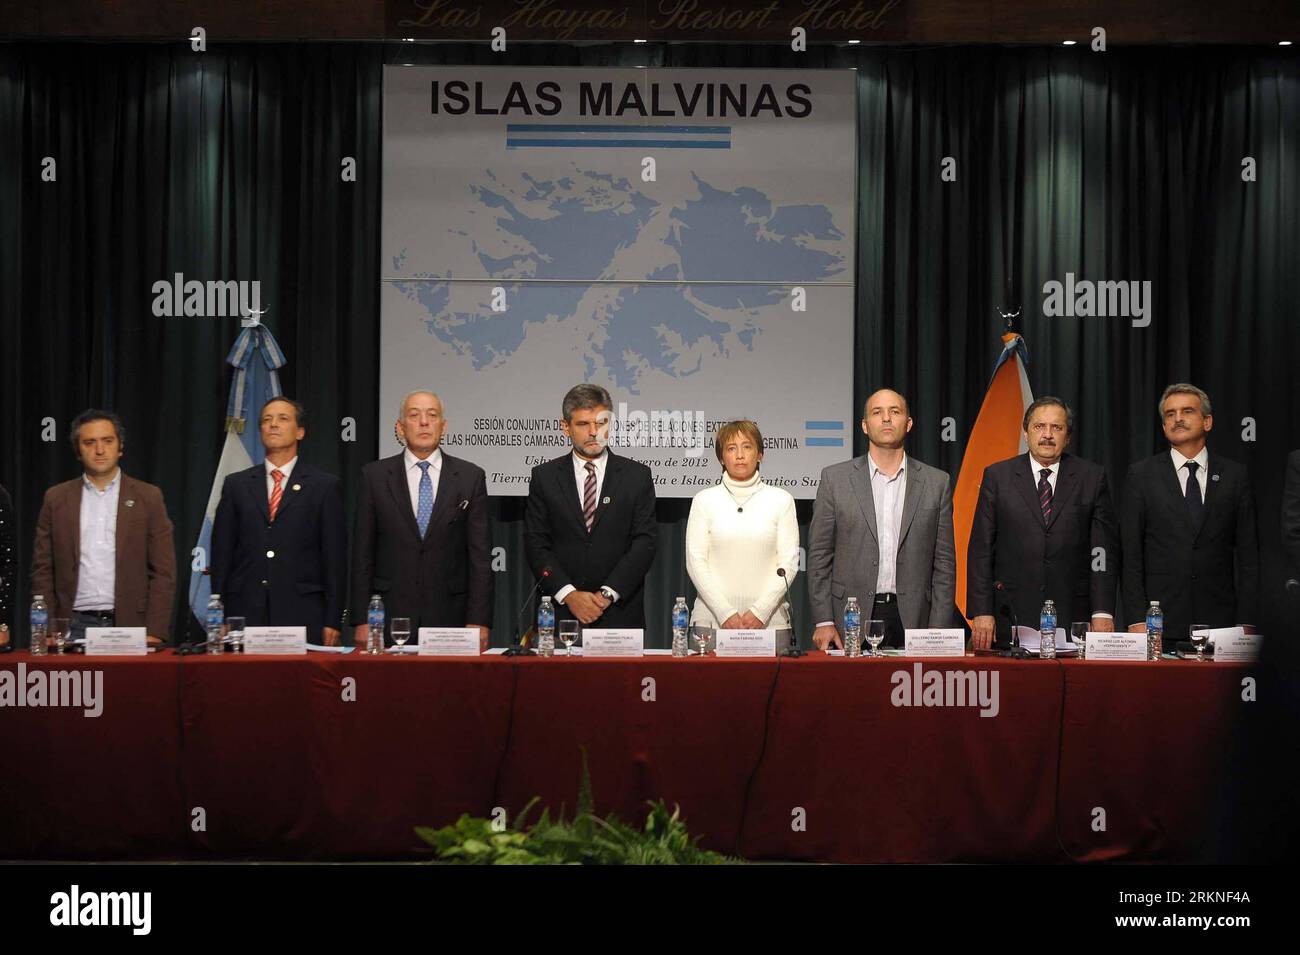 Bildnummer : 57109475 Datum : 25.02.2012 Copyright : imago/Xinhua (120226) -- USHUAIA, 26 février 2012 (Xinhua) -- les délégués assistent à la réunion à Ushuaia, la ville la plus méridionale de l'Argentine, le 25 février 2012. Samedi, les législateurs argentins ont réaffirmé la souveraineté de leur pays sur les îles Malvinas, appelées Falkland par la Grande-Bretagne, et ont appelé à une solution pacifique au différend. Cette position a été annoncée dans une déclaration signée par les représentants de tous les partis du Congrès national argentin lors d ' une réunion spéciale des législateurs chargés des relations extérieures. (Xinhua/Telam) (jl) ARGEN Banque D'Images